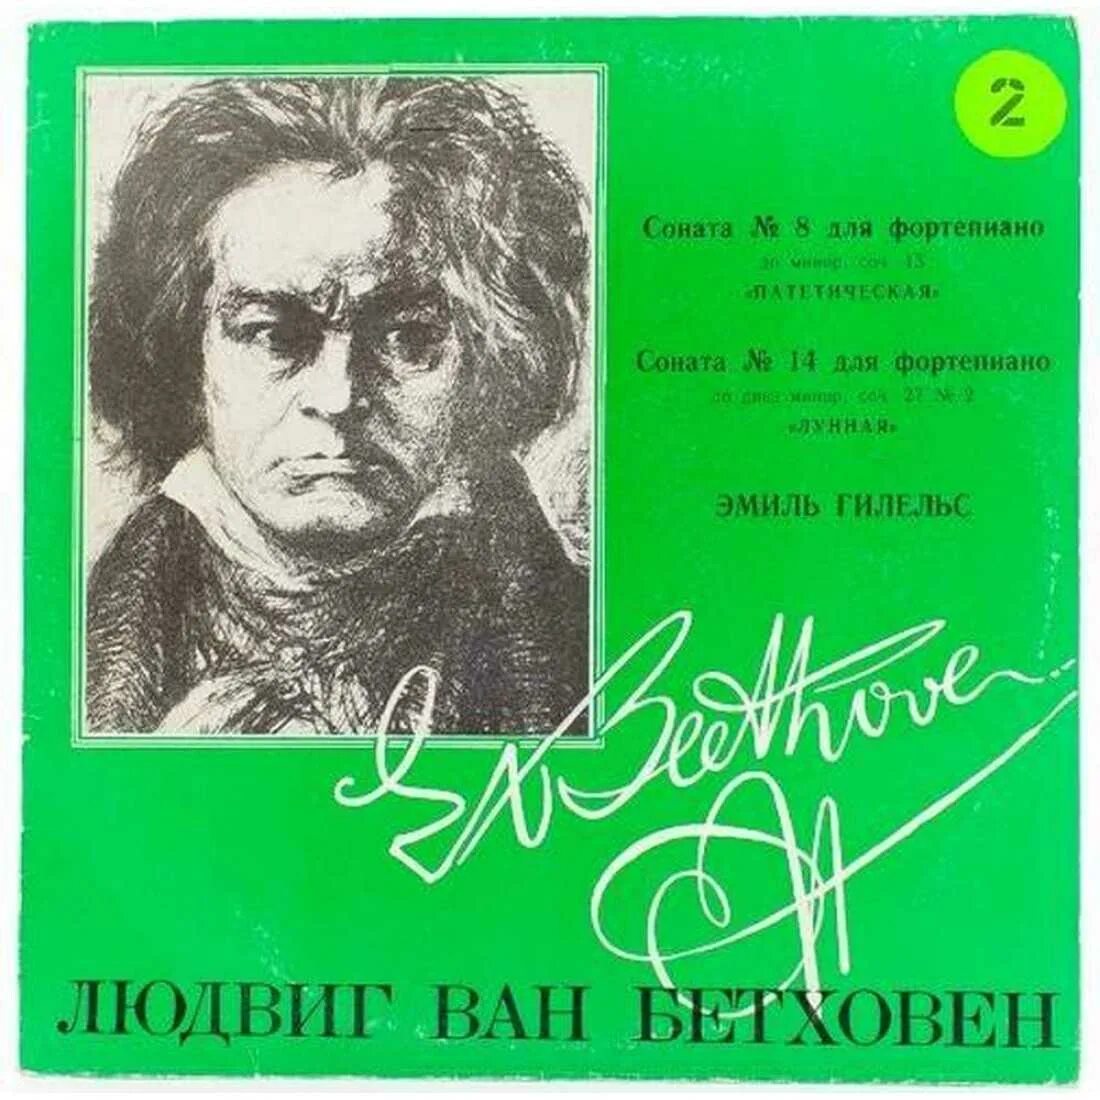 No 8 л бетховена. Соната. Л. Бетховен. Соната №8 ("Патетическая").. Ludwig van Beethoven - Соната №14..